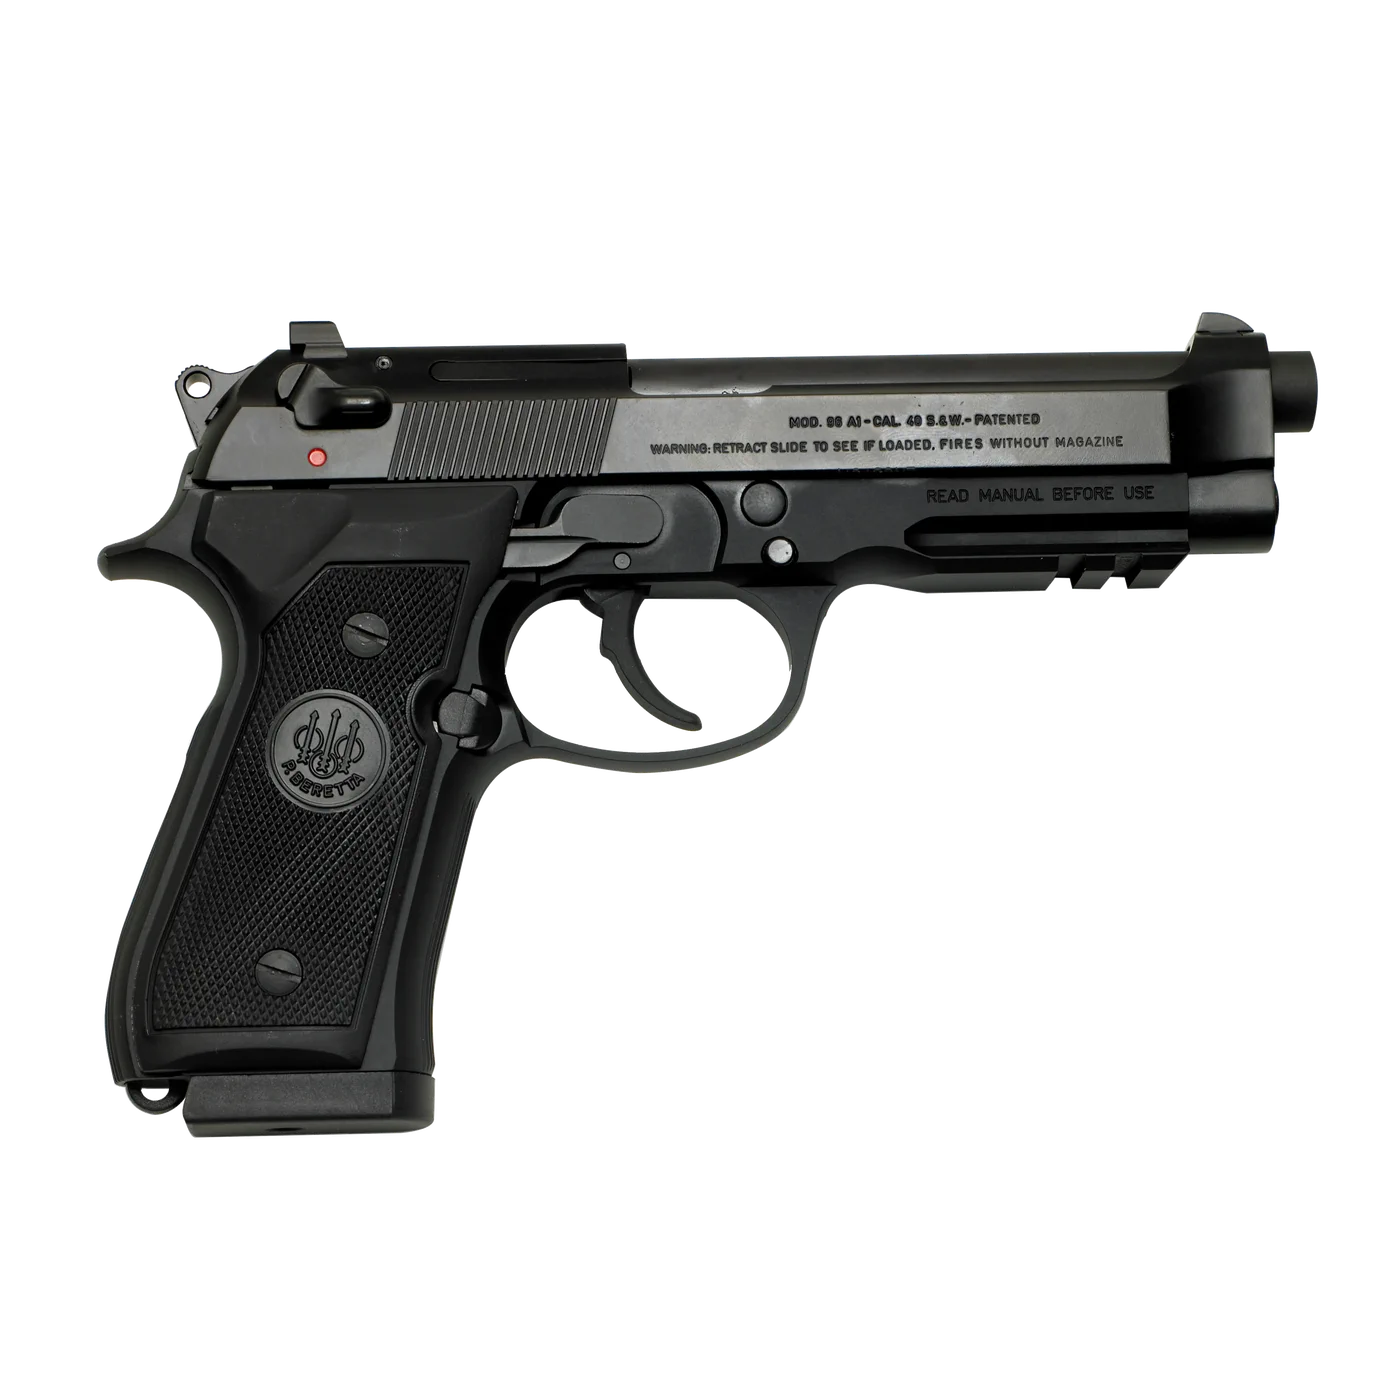 Beretta Single/double action Gun 92 A1